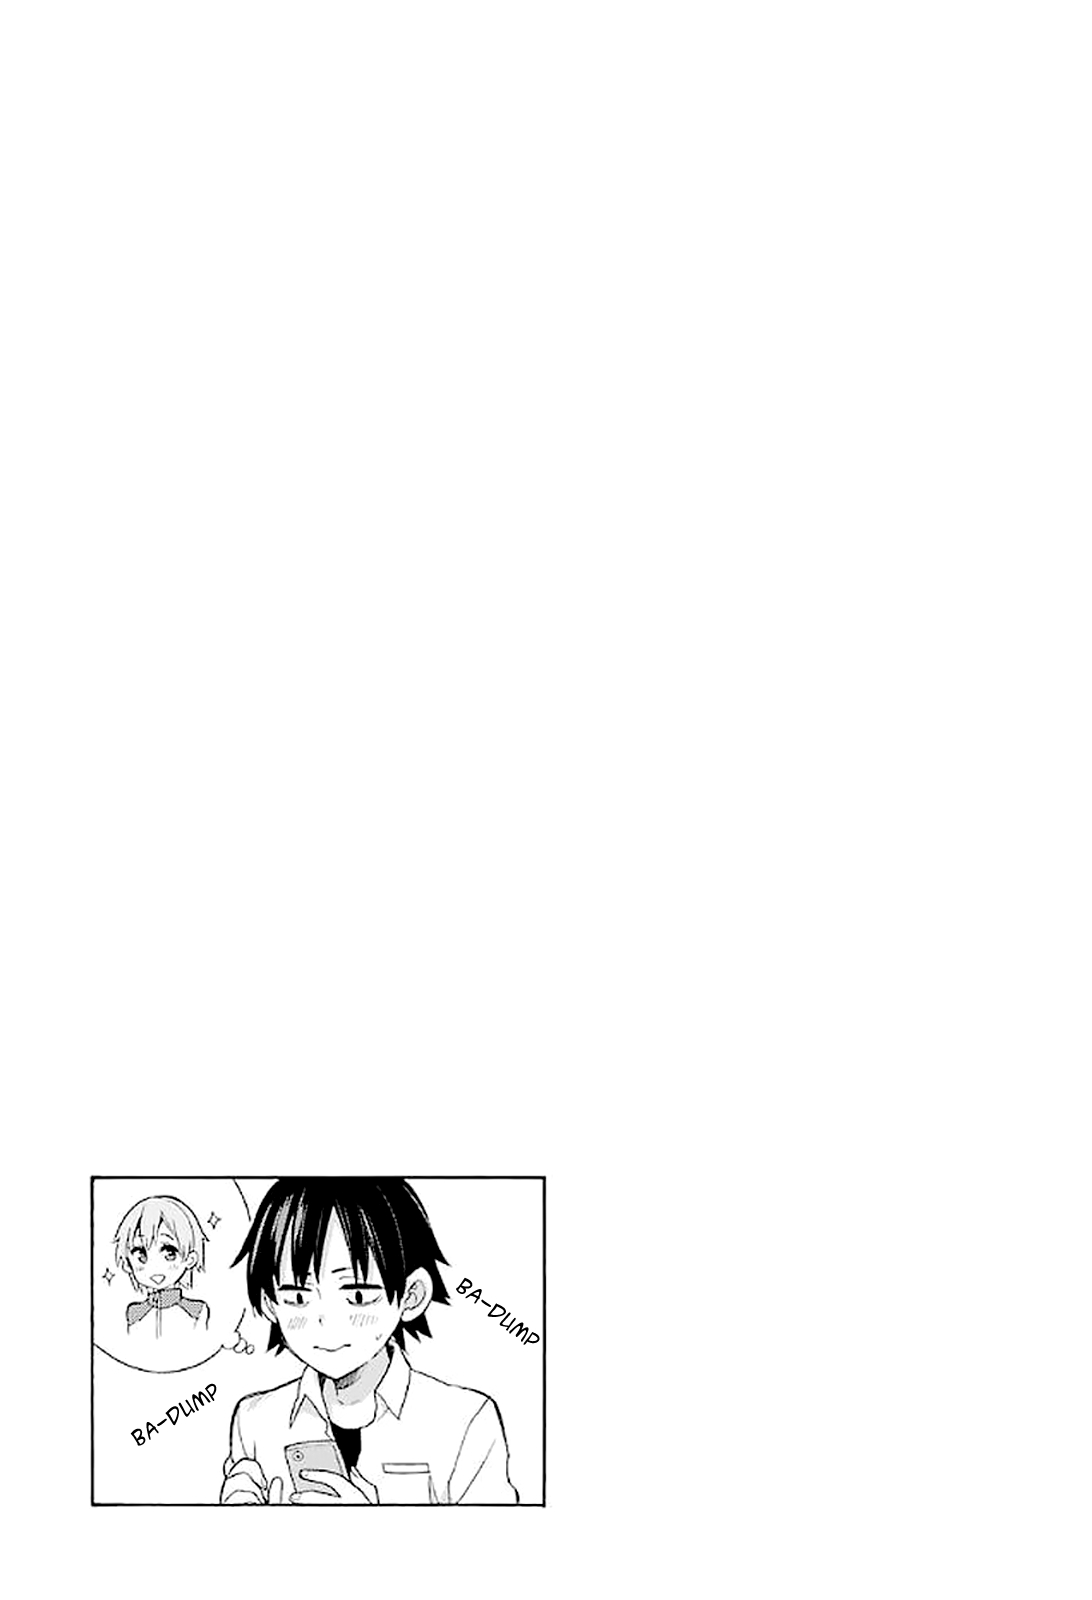 Yahari Ore no Seishun Love Come wa Machigatteiru Monologue Vol. 11 Ch. 49